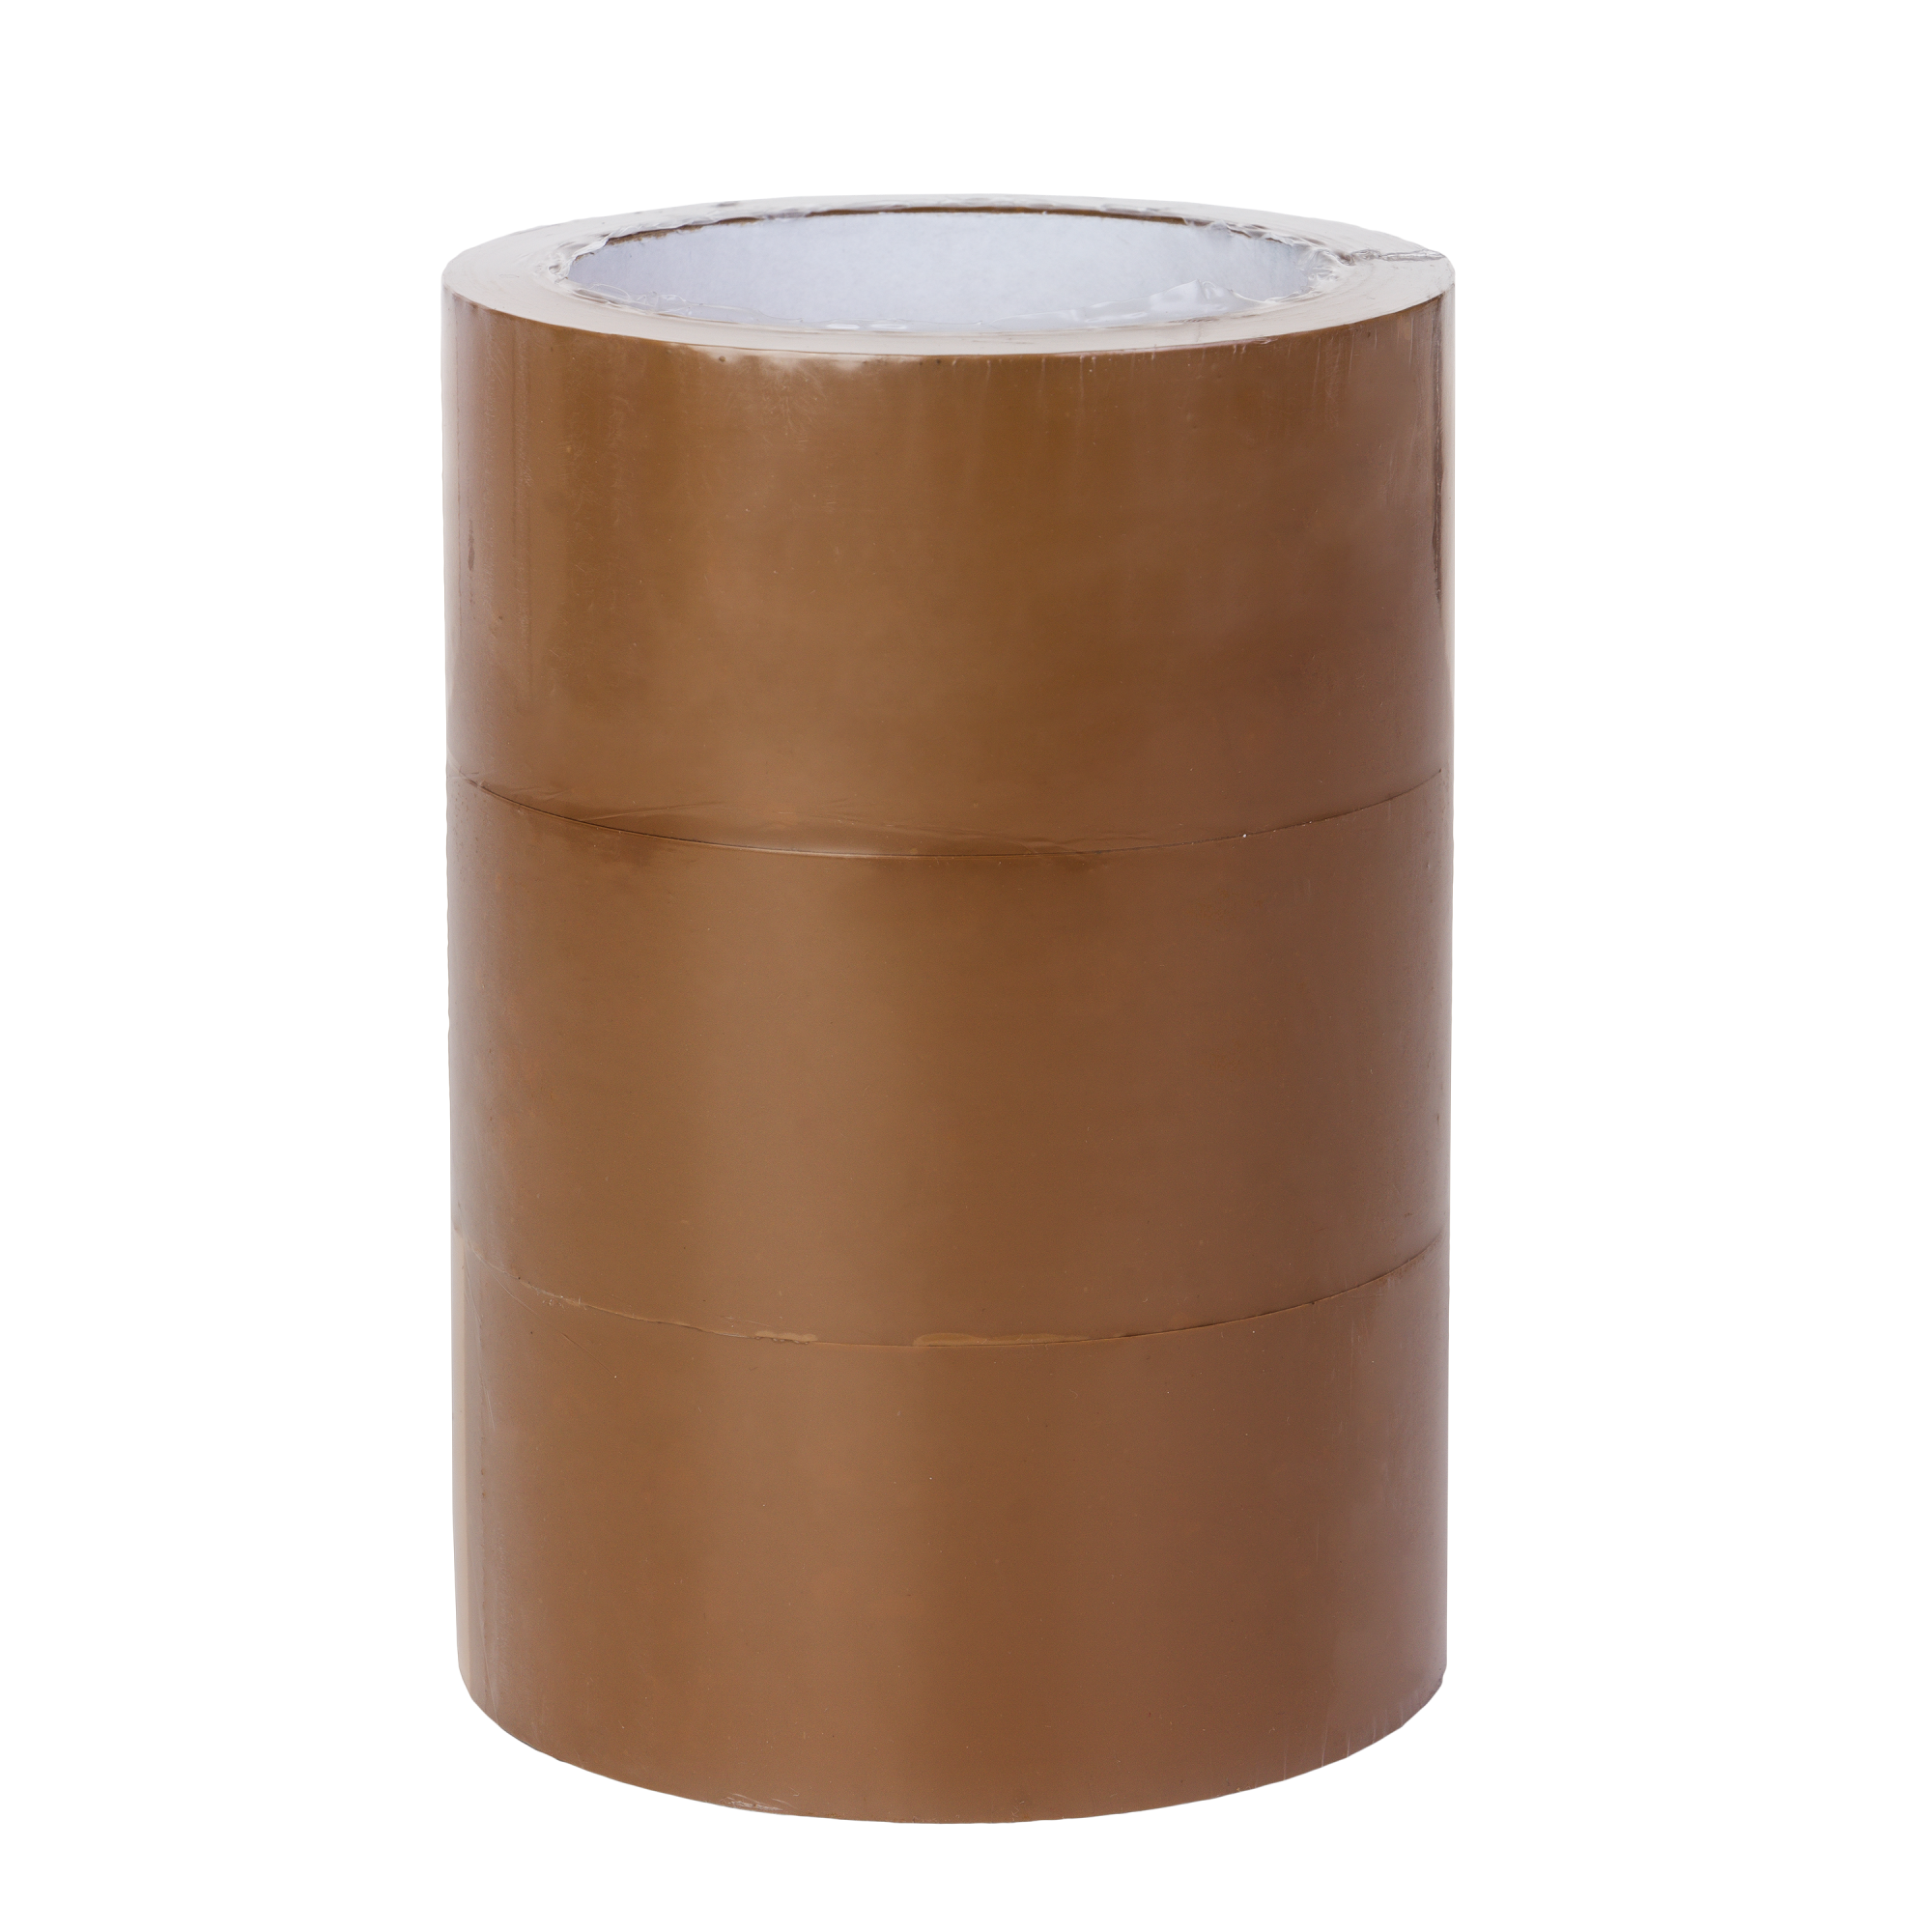 Ruban d'emballage KRAFT, adhésif en caoutchouc de 48 mm x 50 m, couleur  marron.